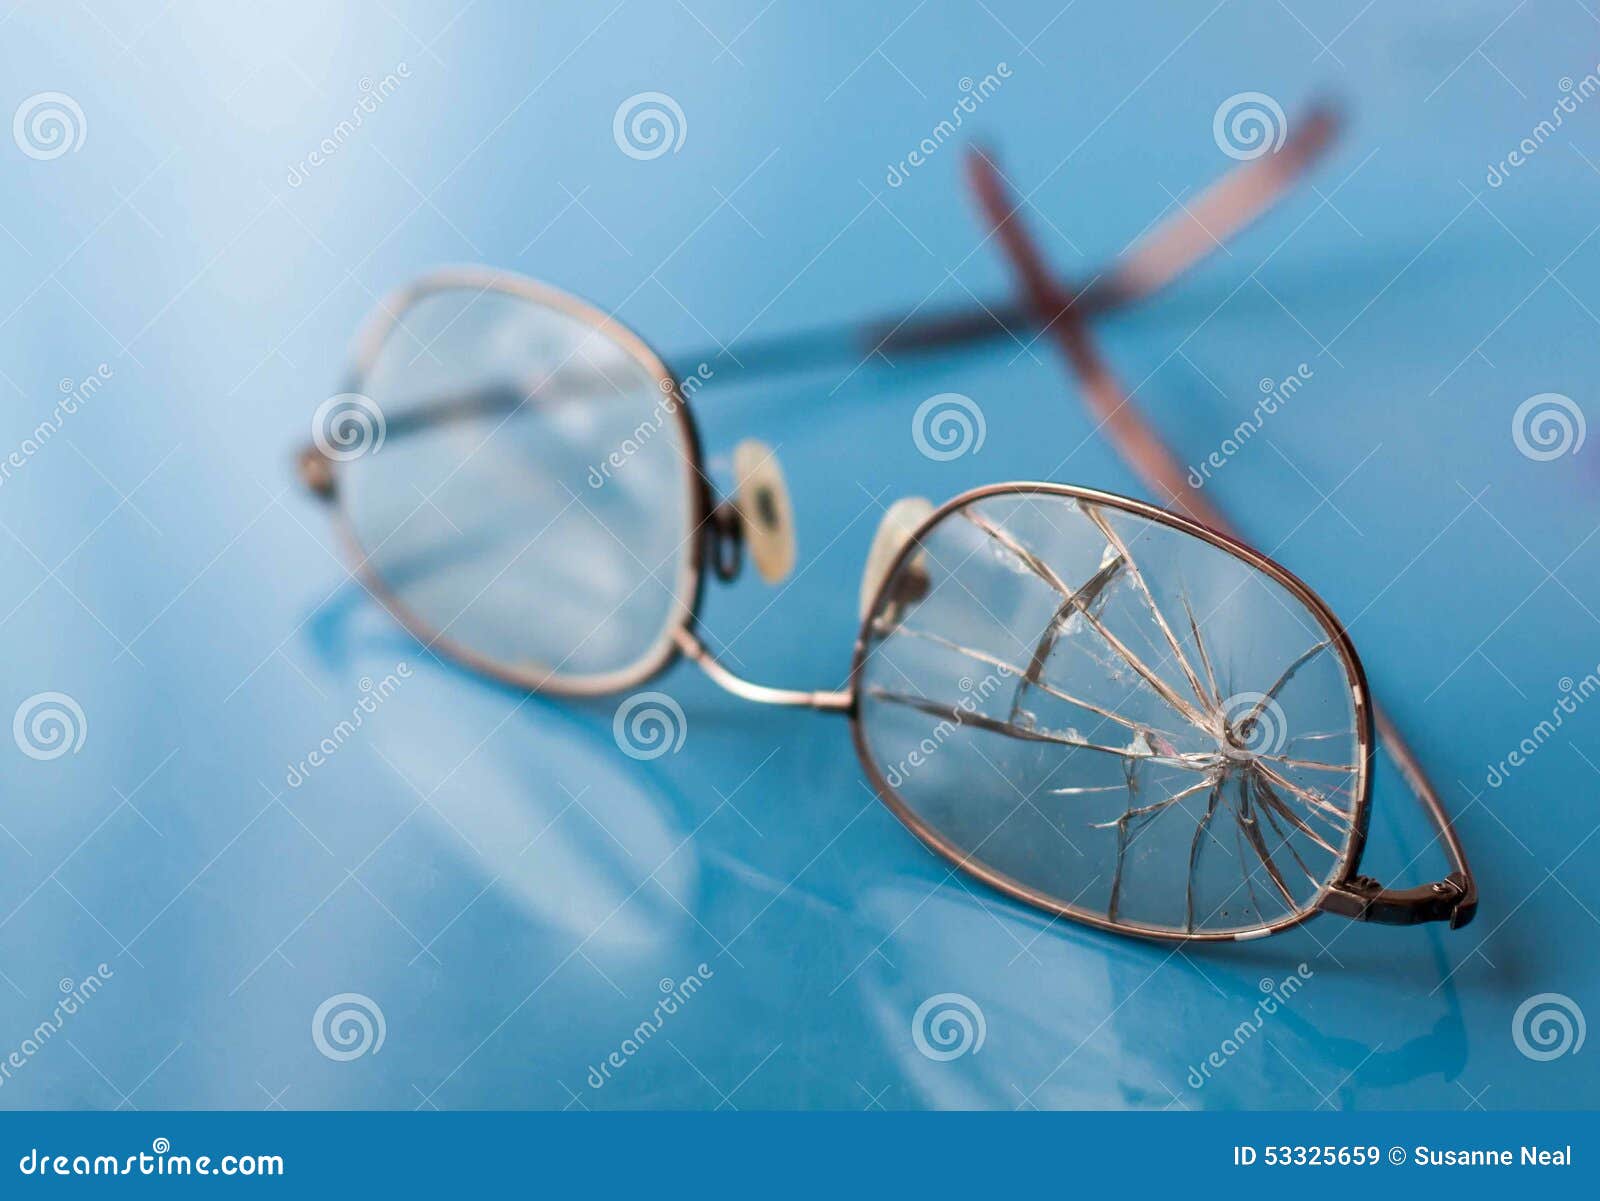 eyeglasses with cracked lens on shiny blue background